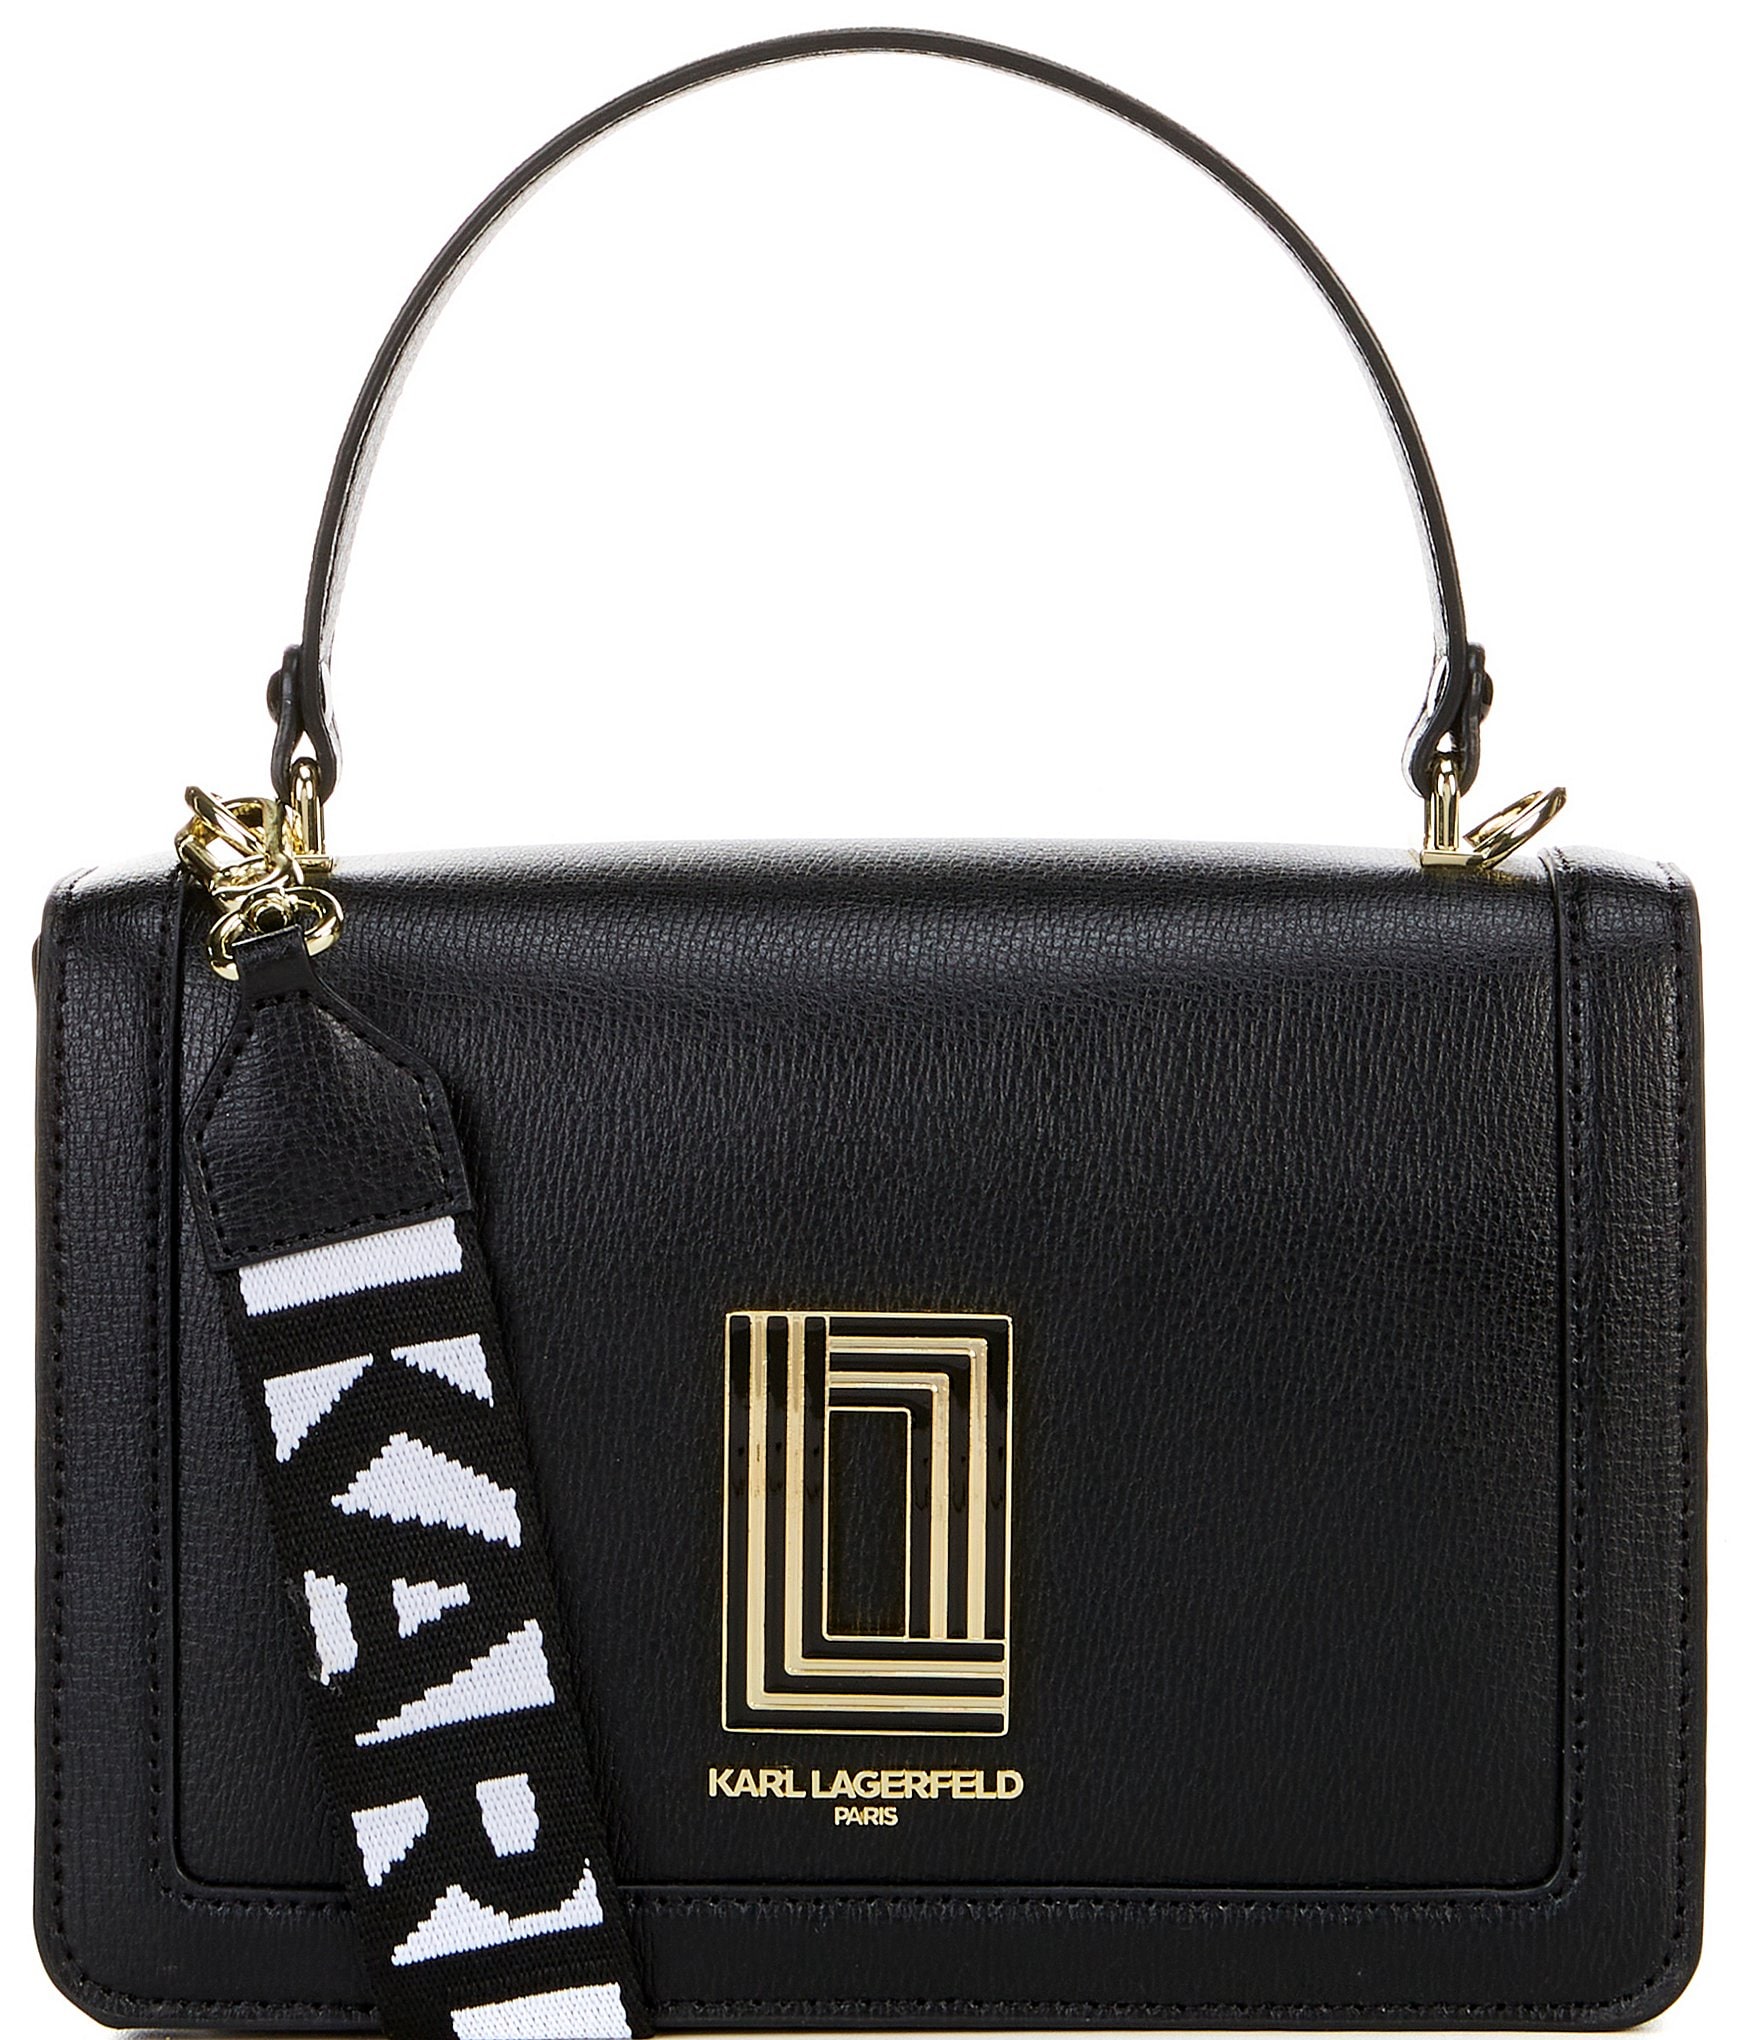 Karl Lagerfeld Paris Nouveau Tote (Black) Handbags - ShopStyle